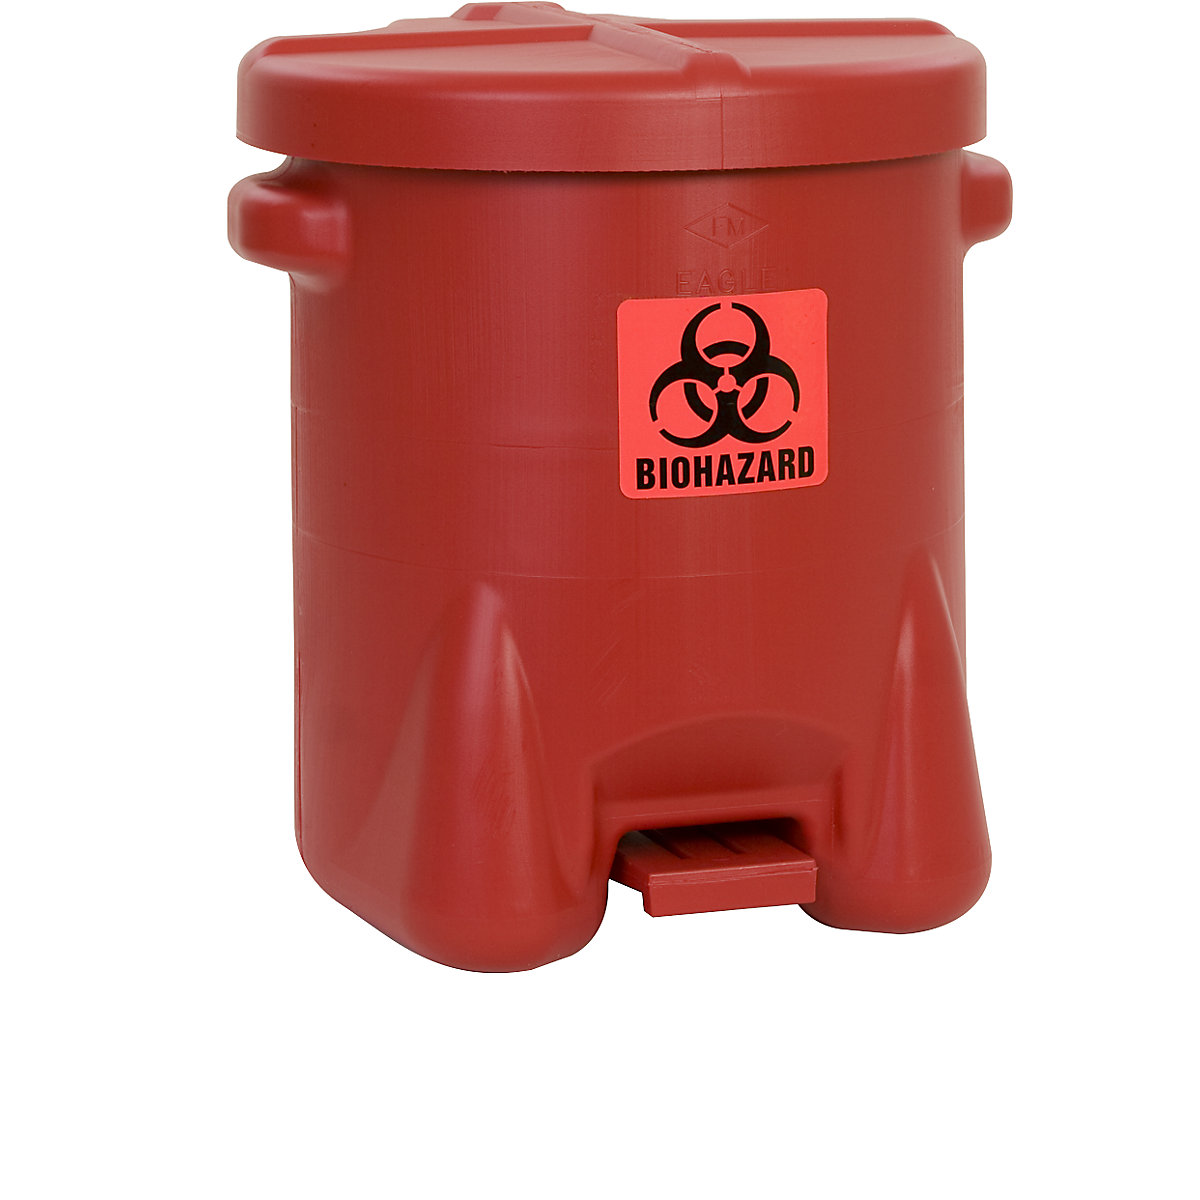 Contenitore di sicurezza in PE per lo smaltimento, per rifiuti a rischio biologico – Justrite